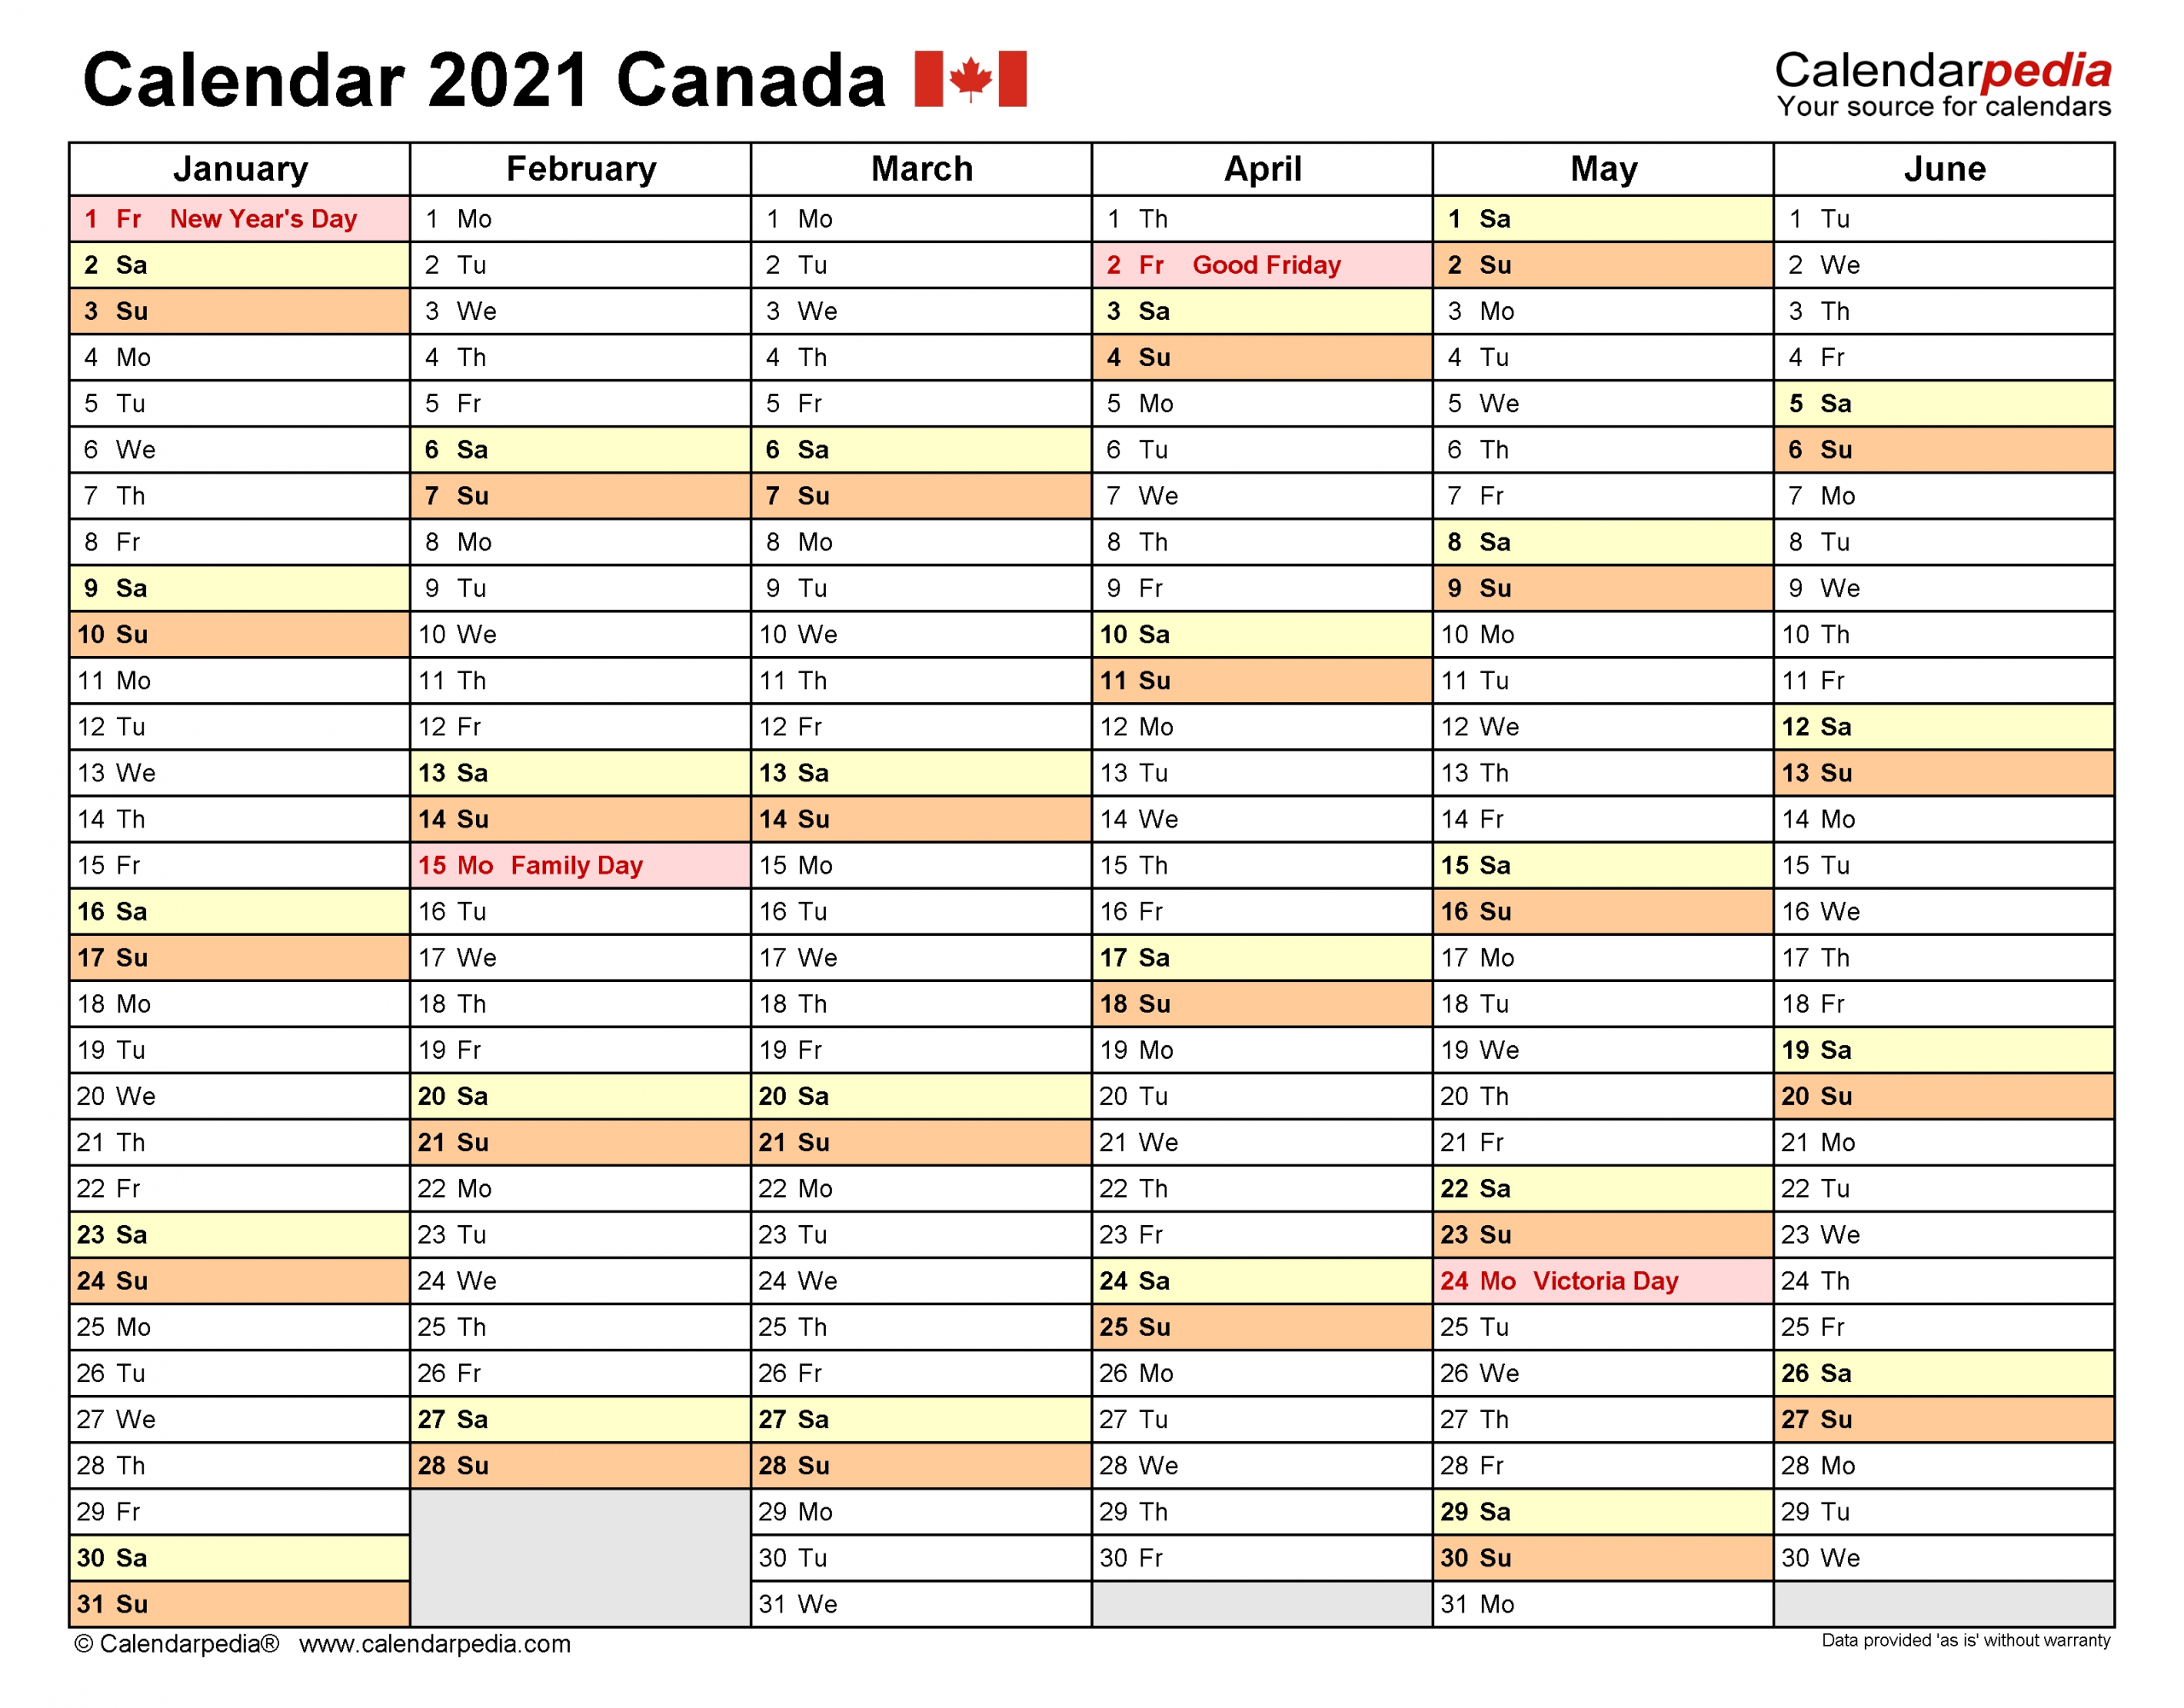 Canada Calendar 2021 - Free Printable Excel Templates-Excel Vacation Calender 2021